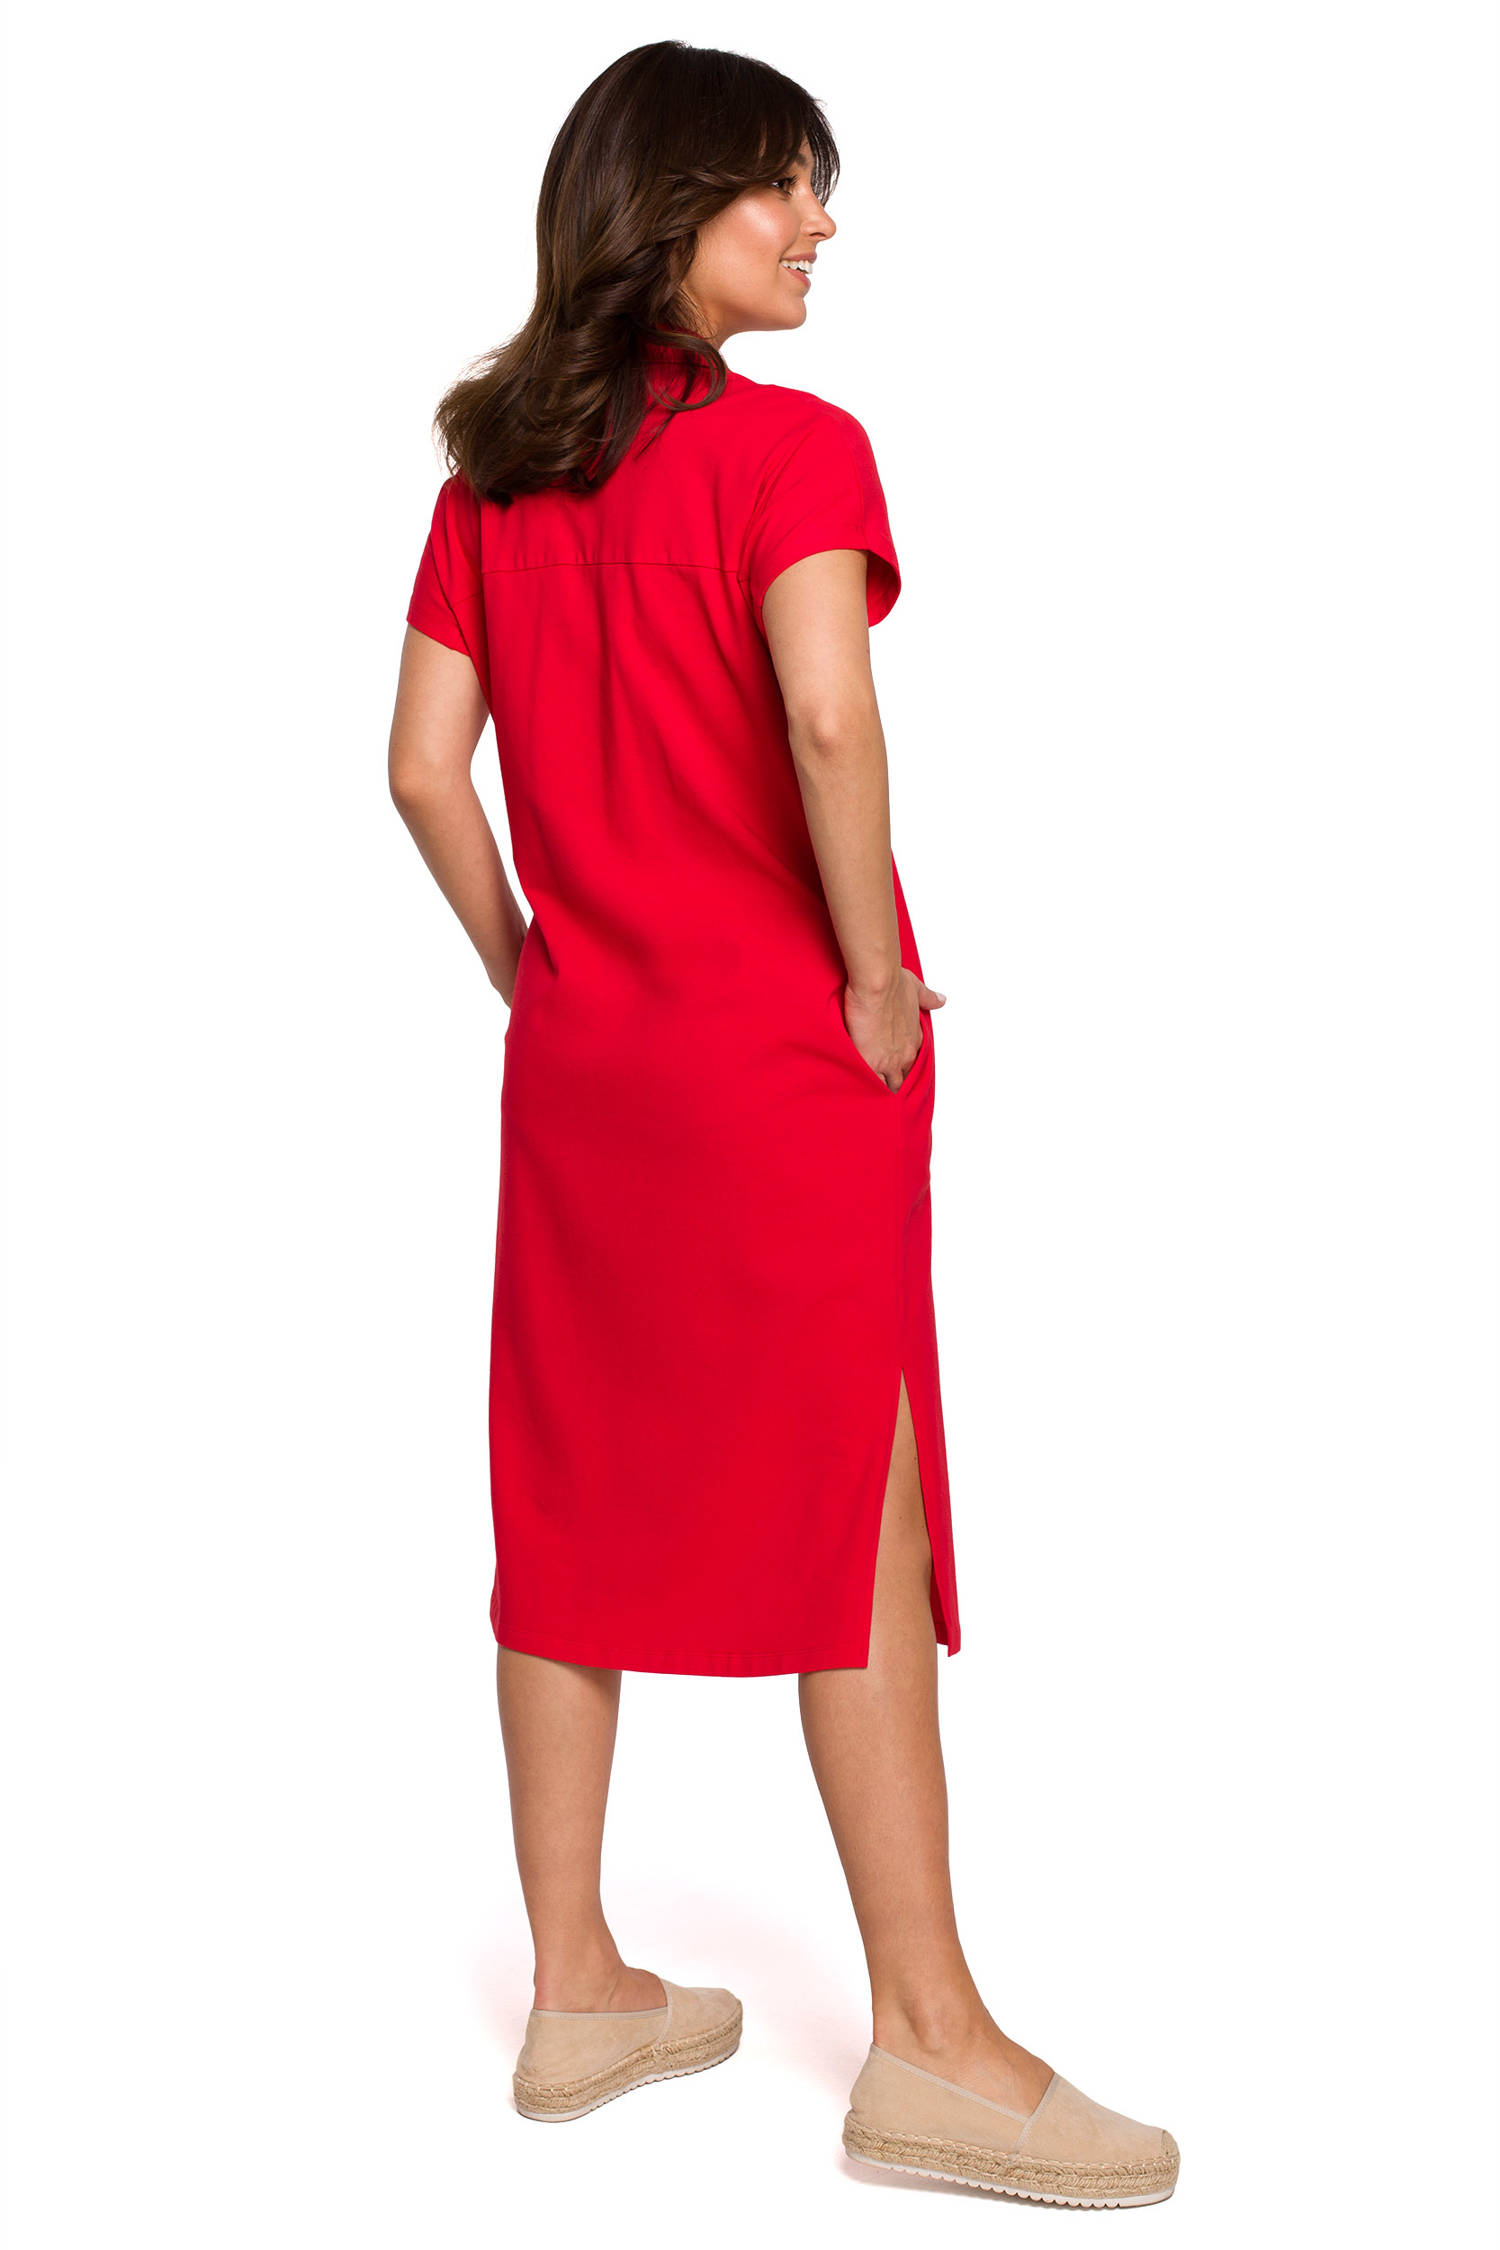 Opis: Sukienka koszulowa na lato szmizjerka z kołnierzykiem czerwona bawełna.